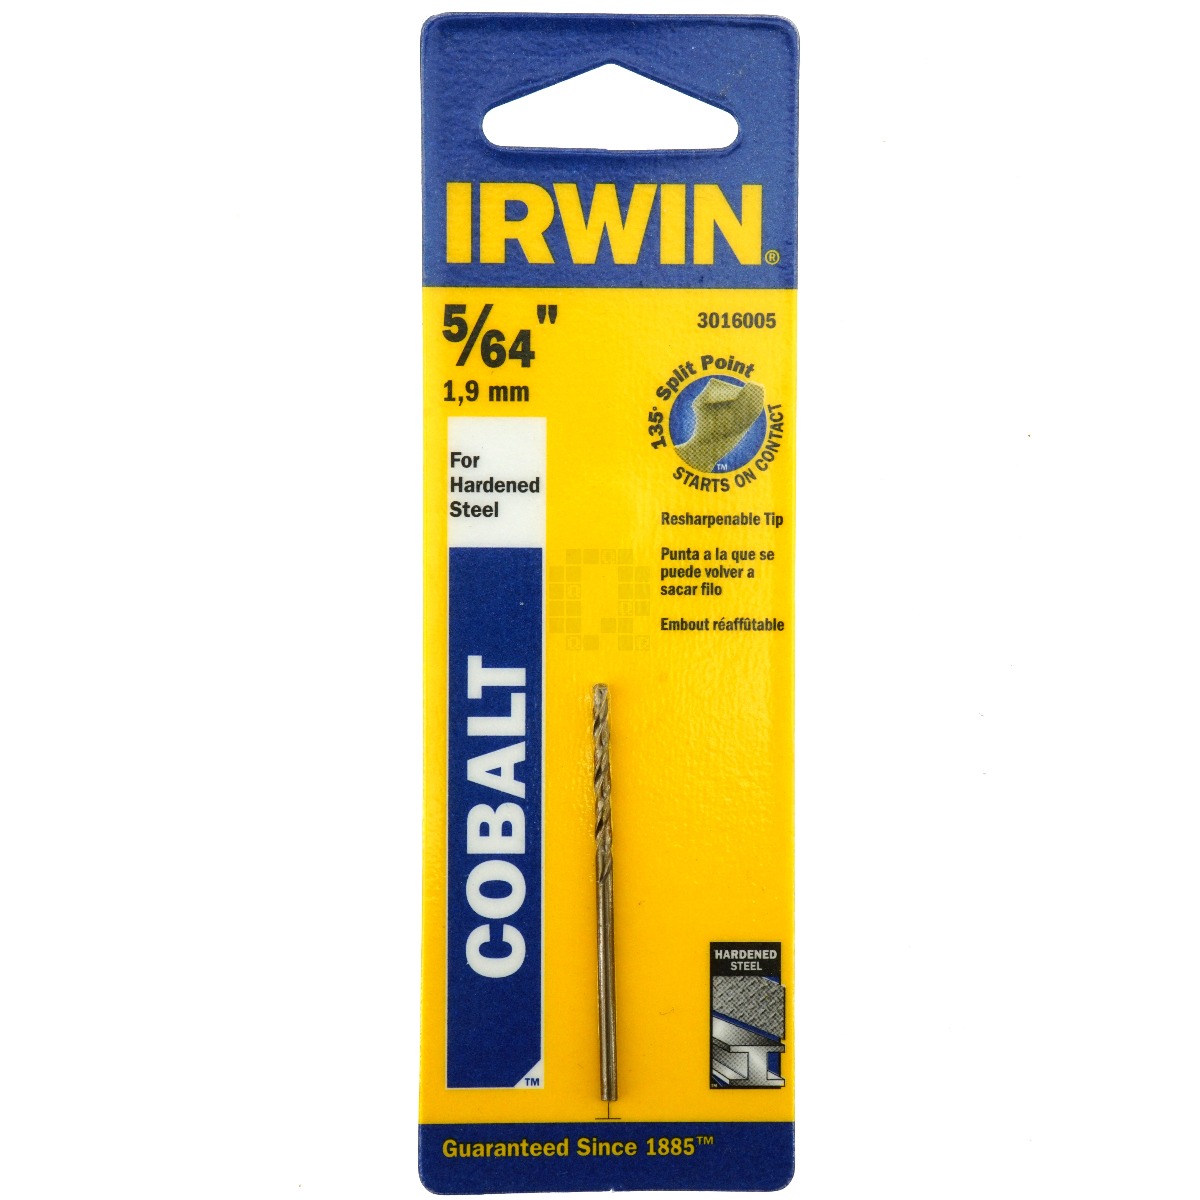 Irwin 3016005 5/64" Cobalt Drill Bit, 135° Point